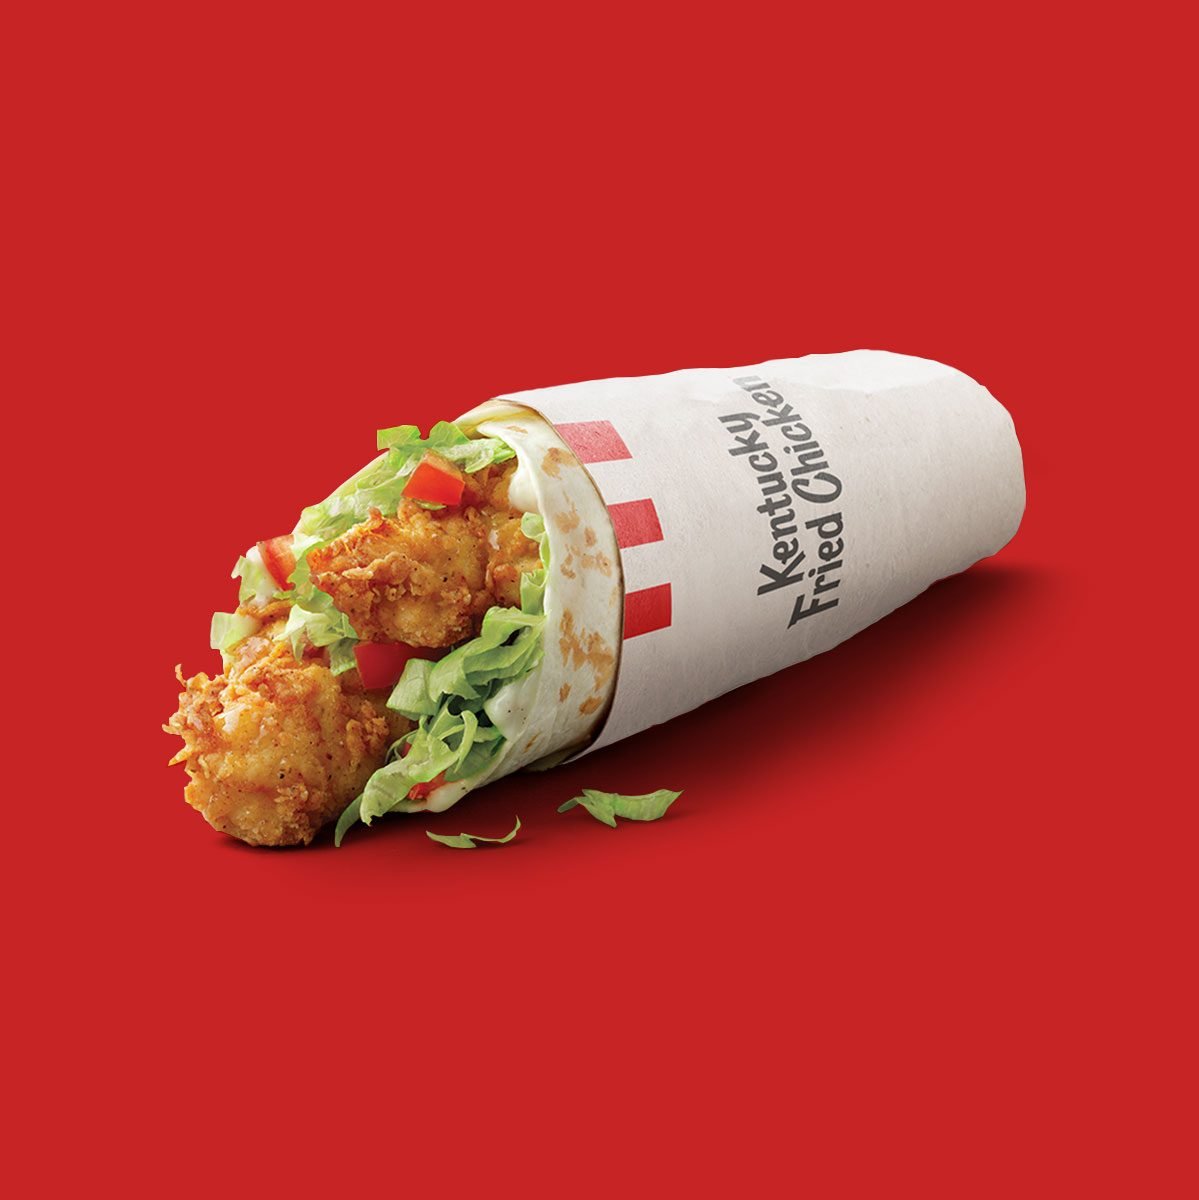 KFC Is Getting Rid of 5 Popular Menu Items